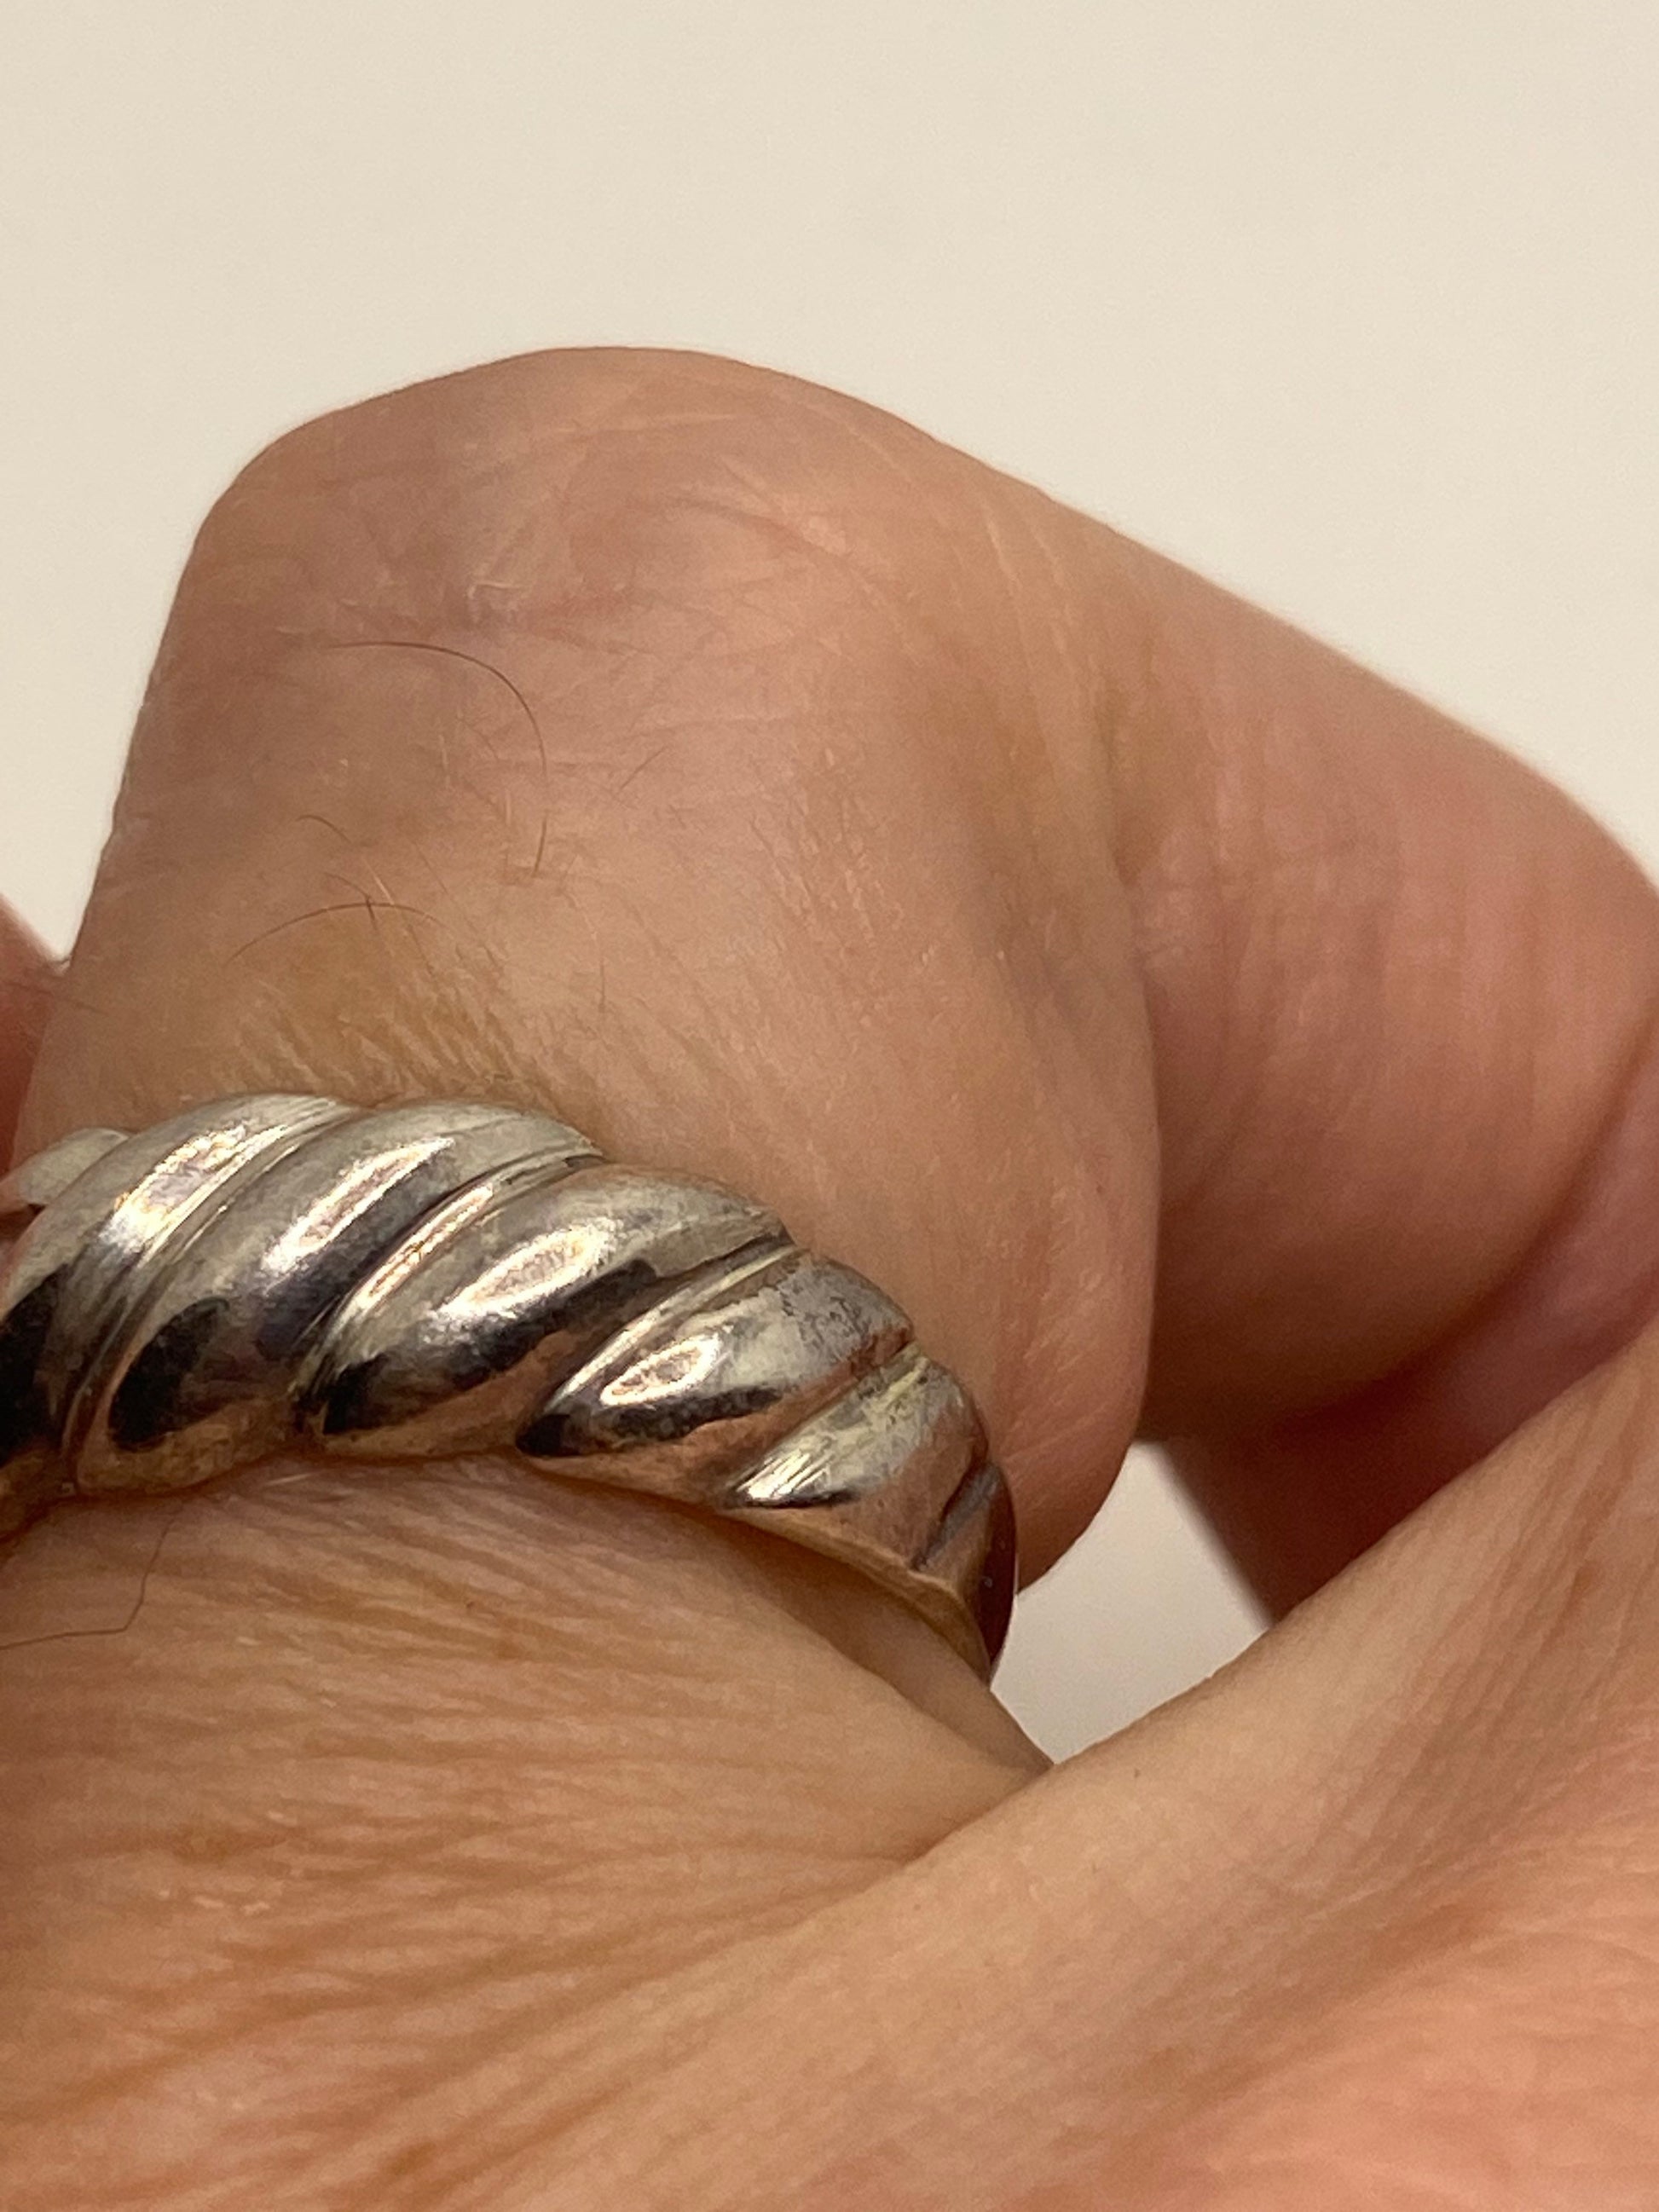 Vintage 925 Sterling Silver Antiqued Band Ring